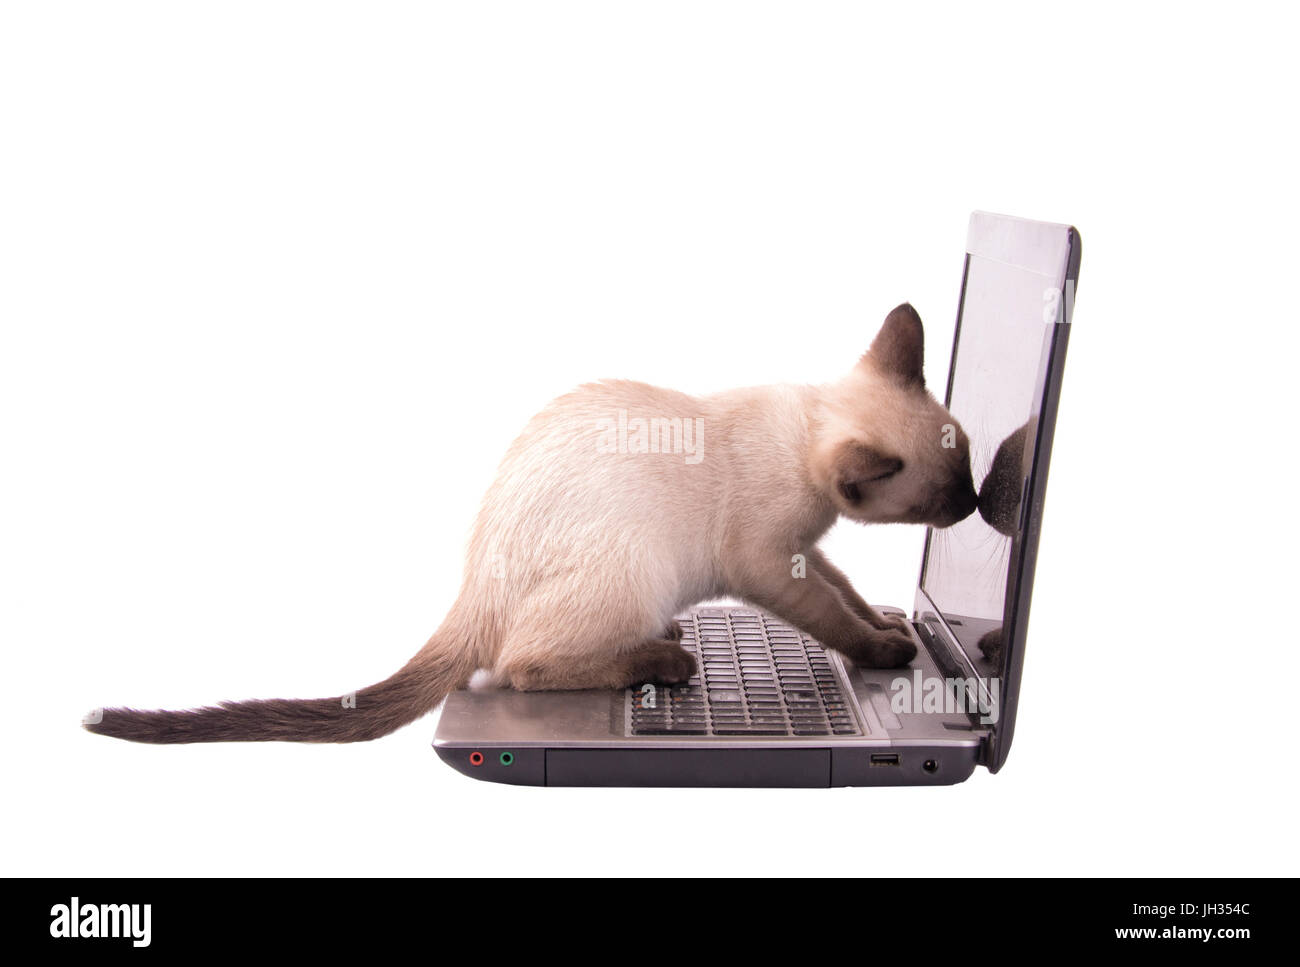 L'inhalation de chaton siamois chocolat point sur un écran de l'ordinateur portable, isolated on white Banque D'Images